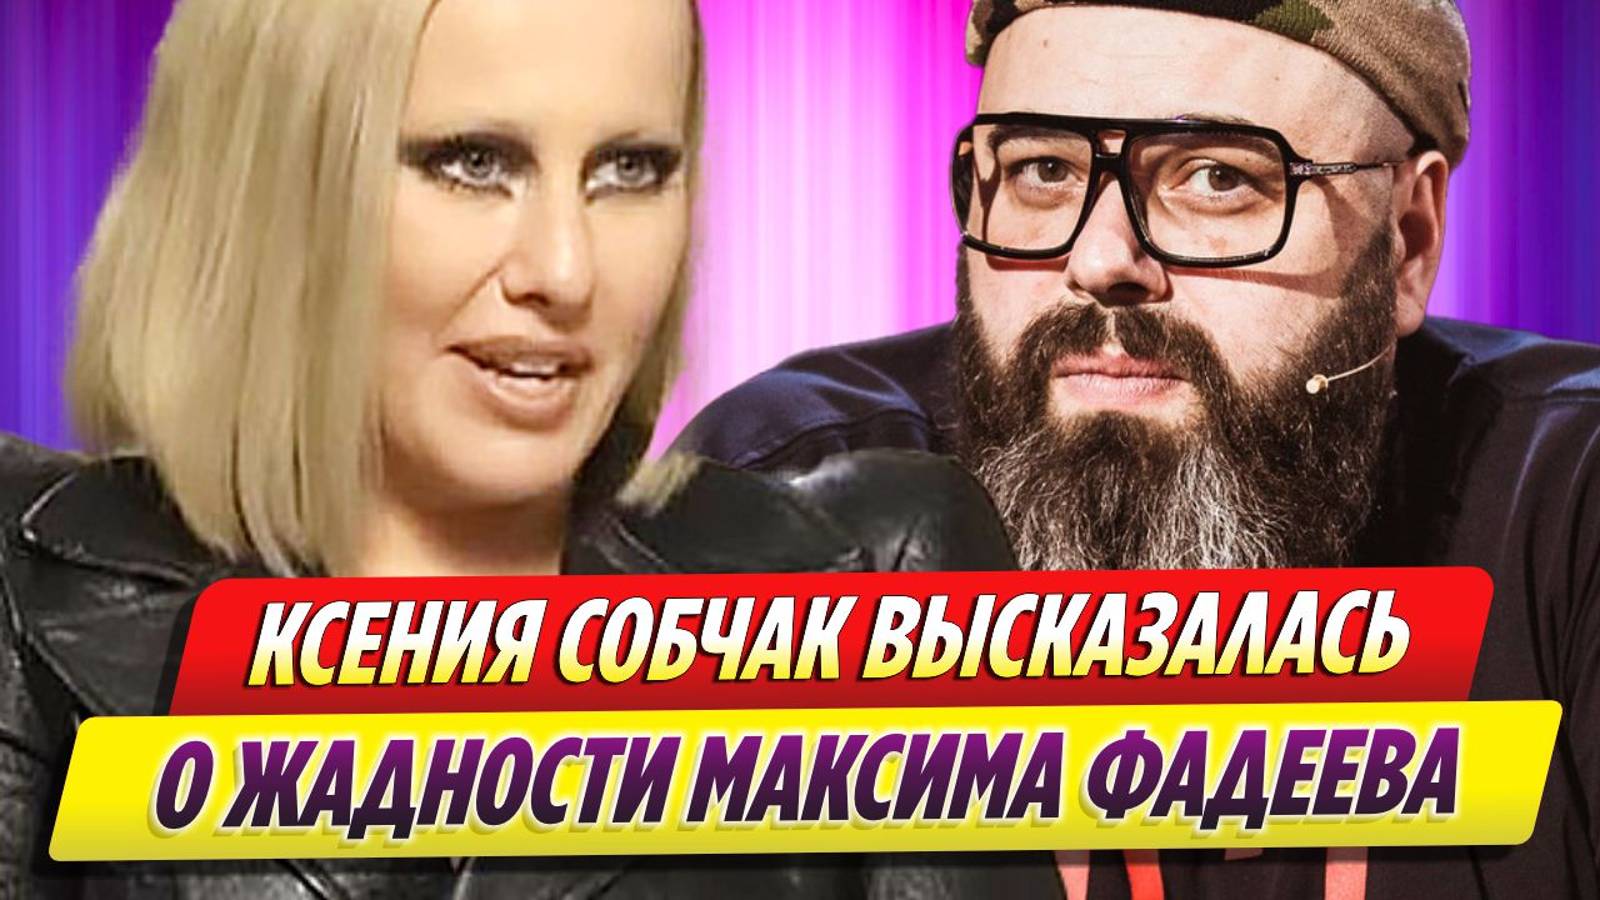 Ксения Собчак высказалась о жадности Максима Фадеева